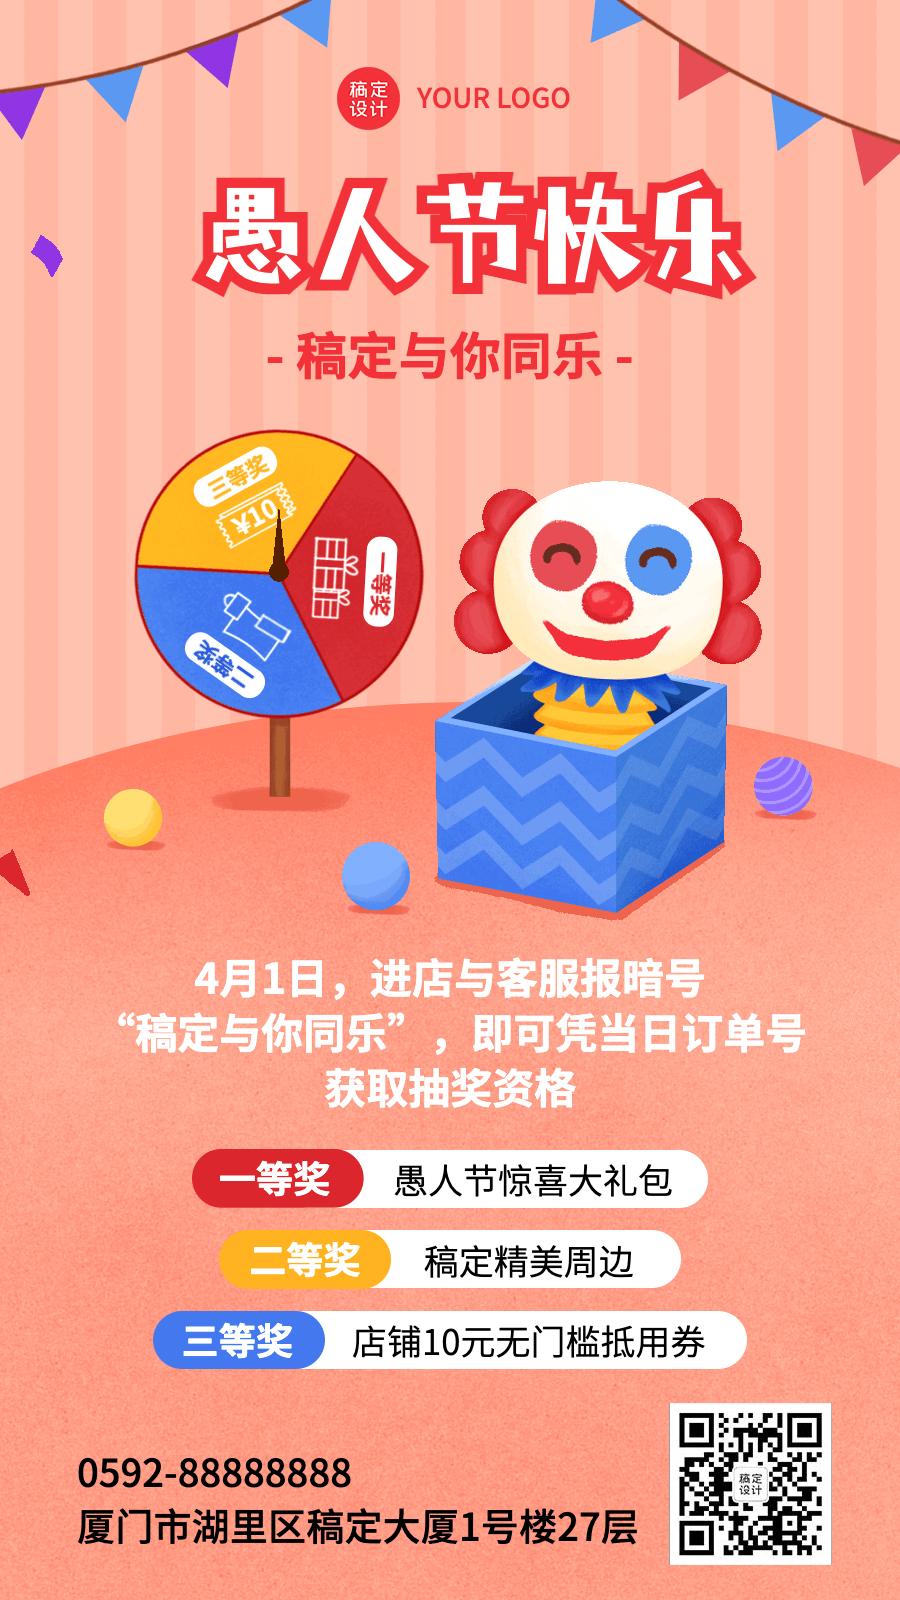 4.1愚人节节日营销插画动态手机海报预览效果